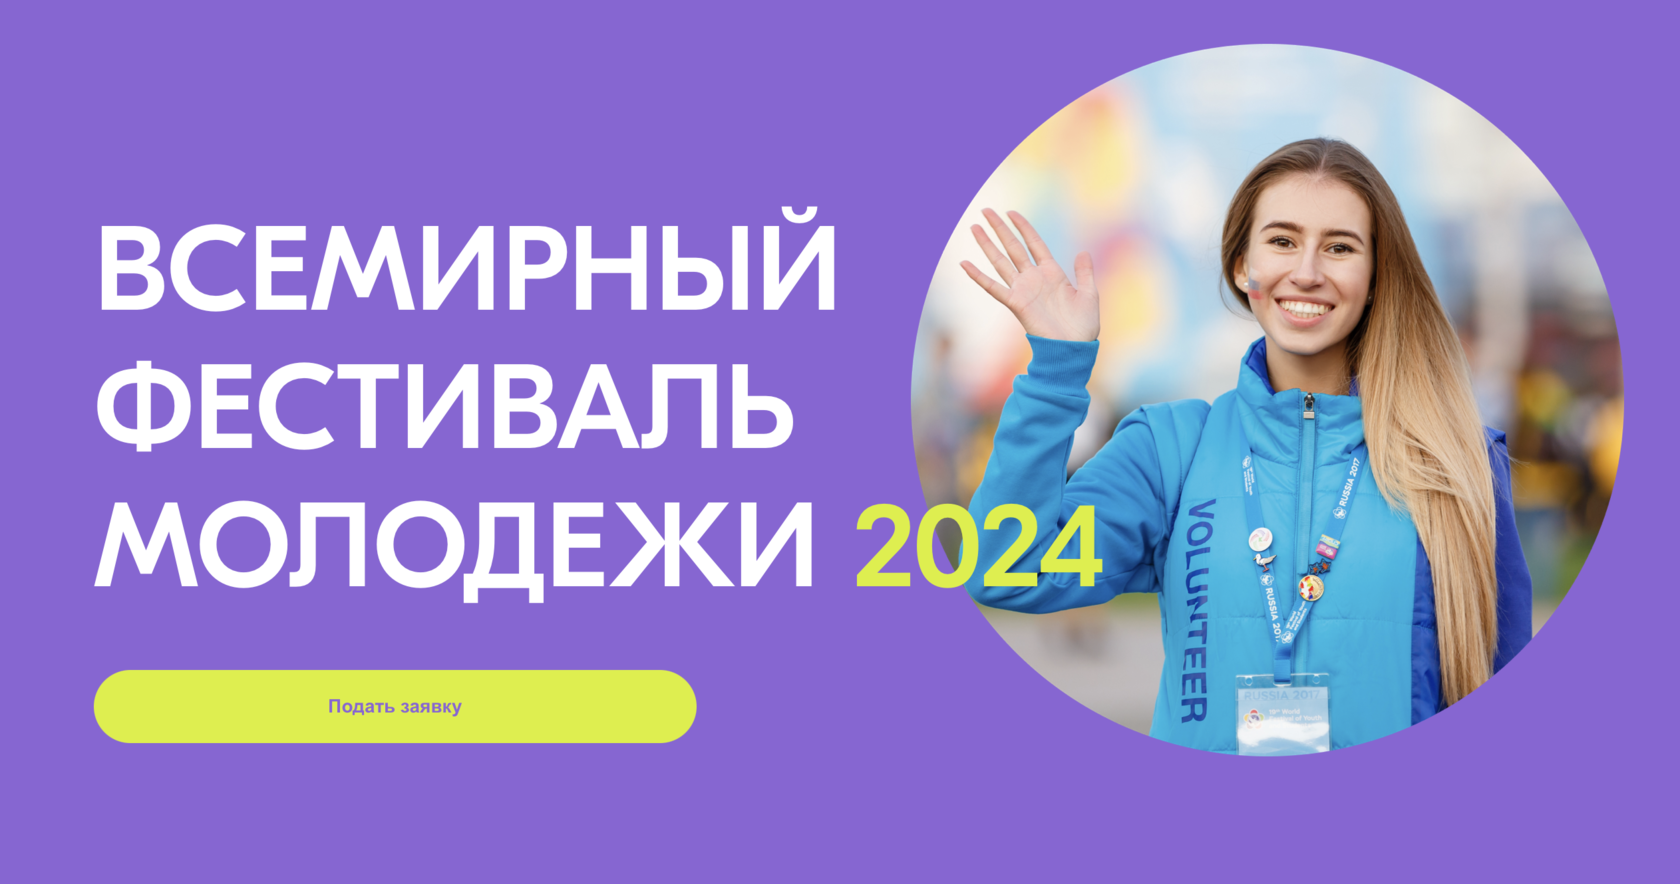 Сколько набрали добровольцев в 2024 году россии. Всемирный фестиваль молодё2024. Всемирный фестиваль молодёжи и студентов 2024. О фестивале молодежи в 2024 году. Волонтеры на фестиваль молодежи 2024.